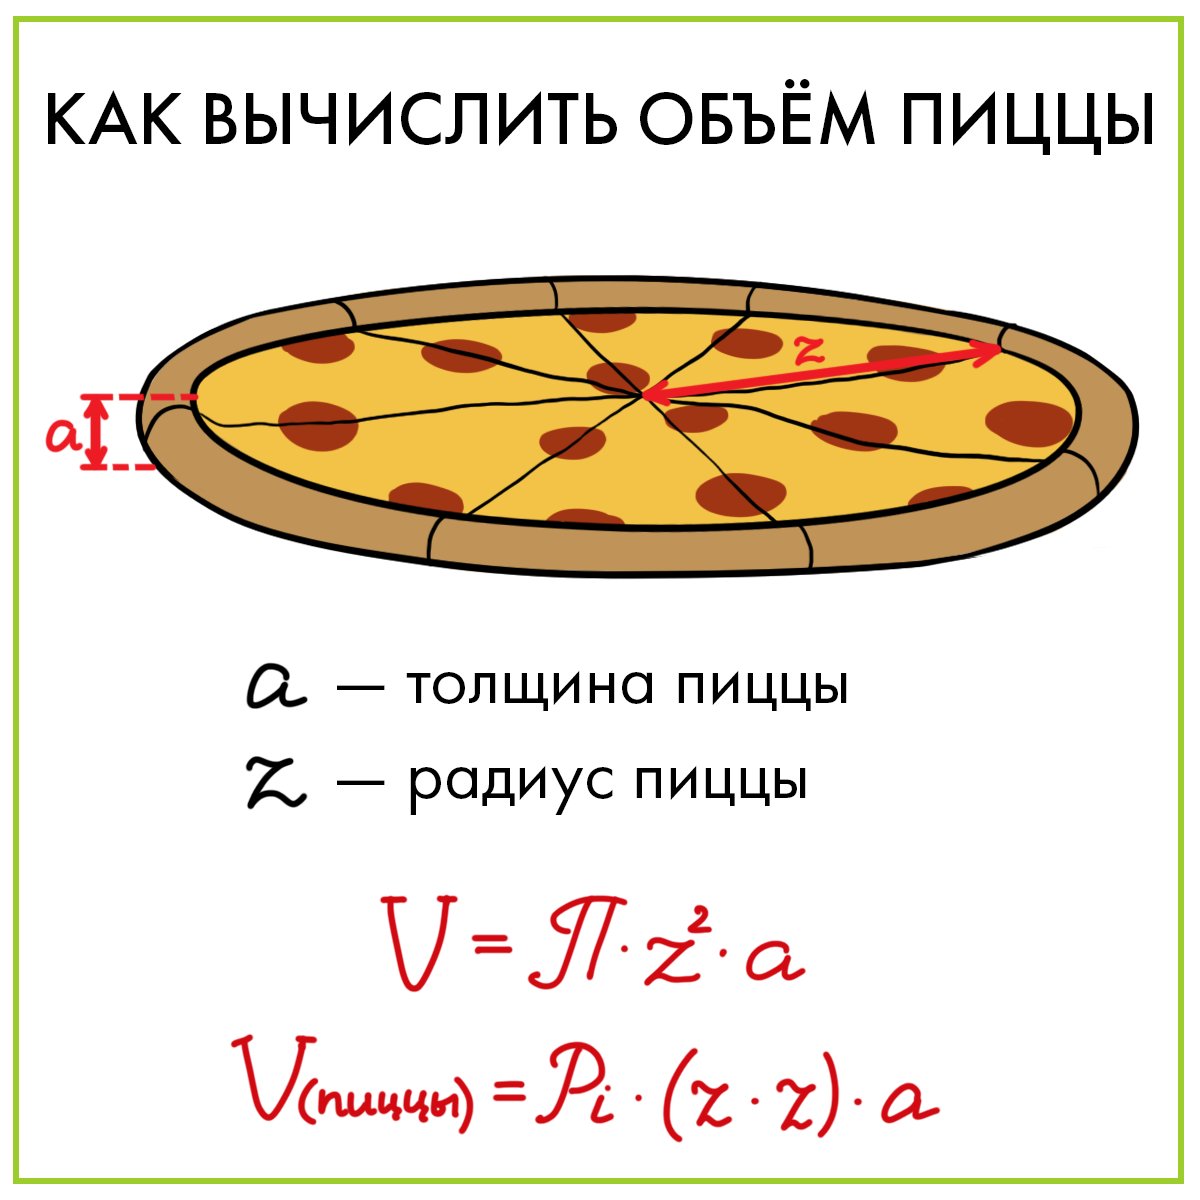 тех карта пицца мясная фото 54